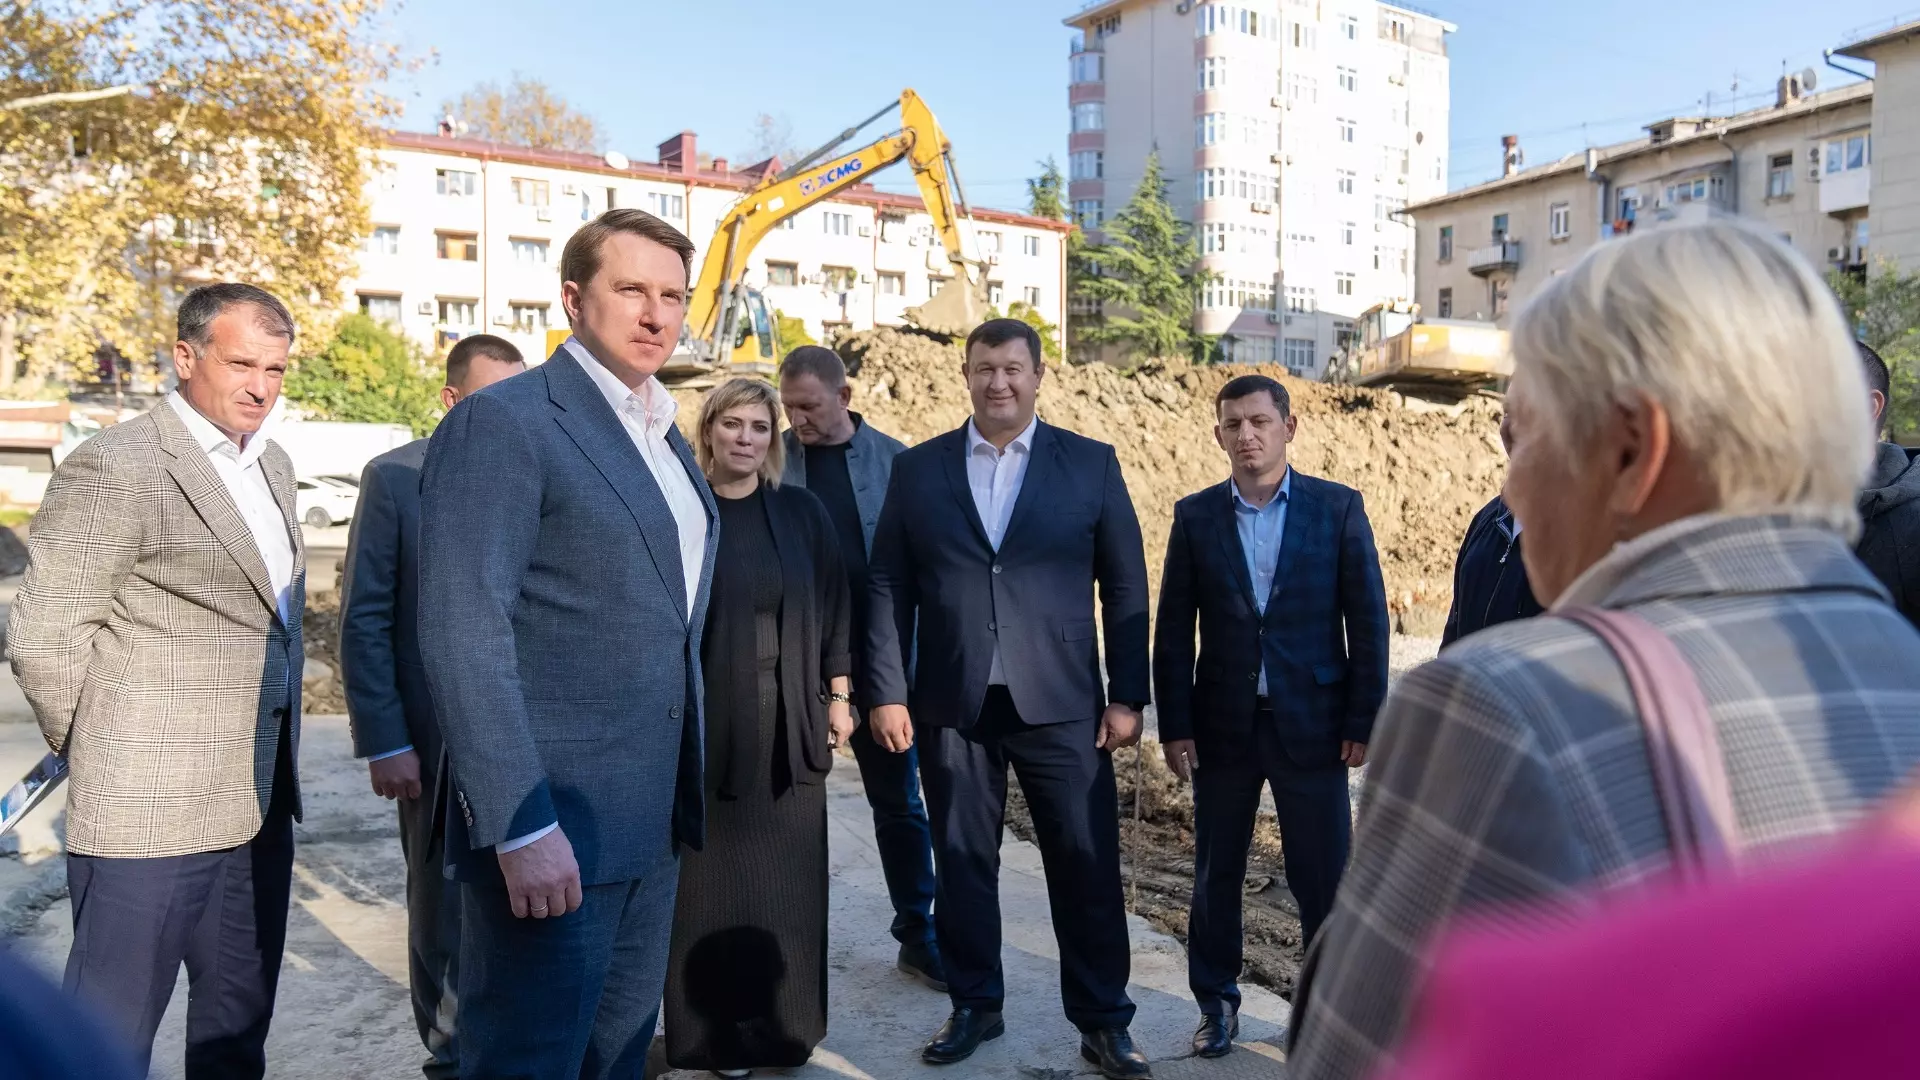 Мэр Сочи Копайгородский запустил процесс обновления дорожной инфраструктуры